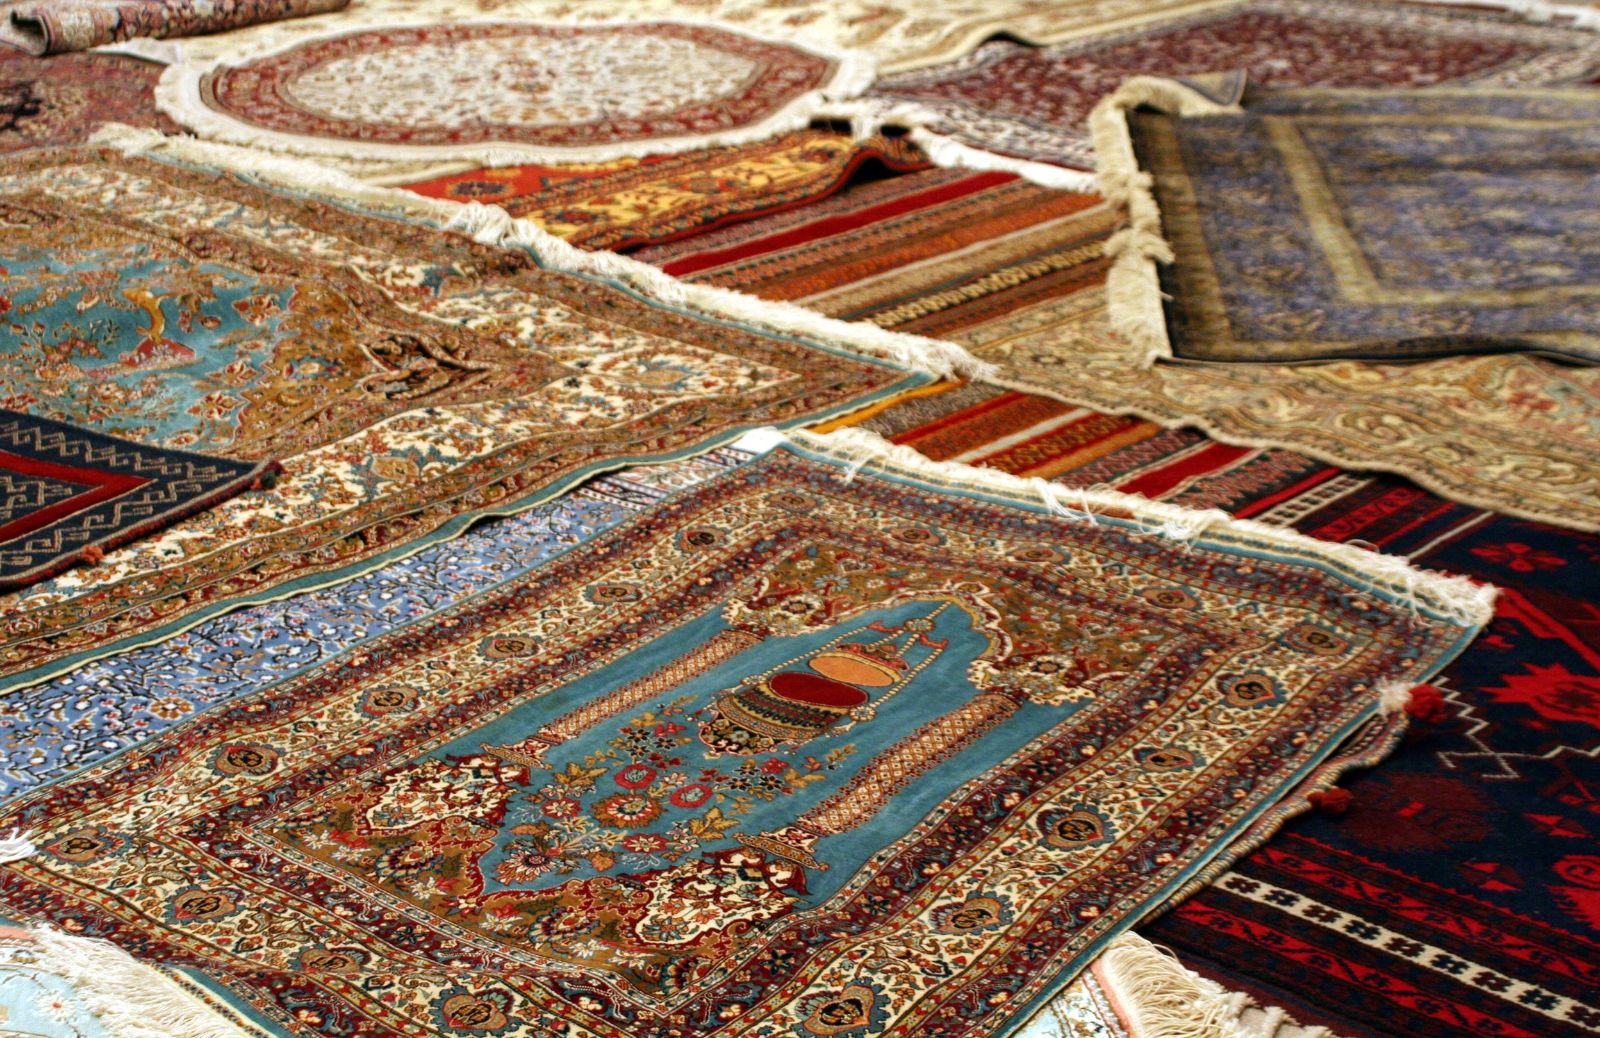 Come riconoscere le principali tipologie di tappeti